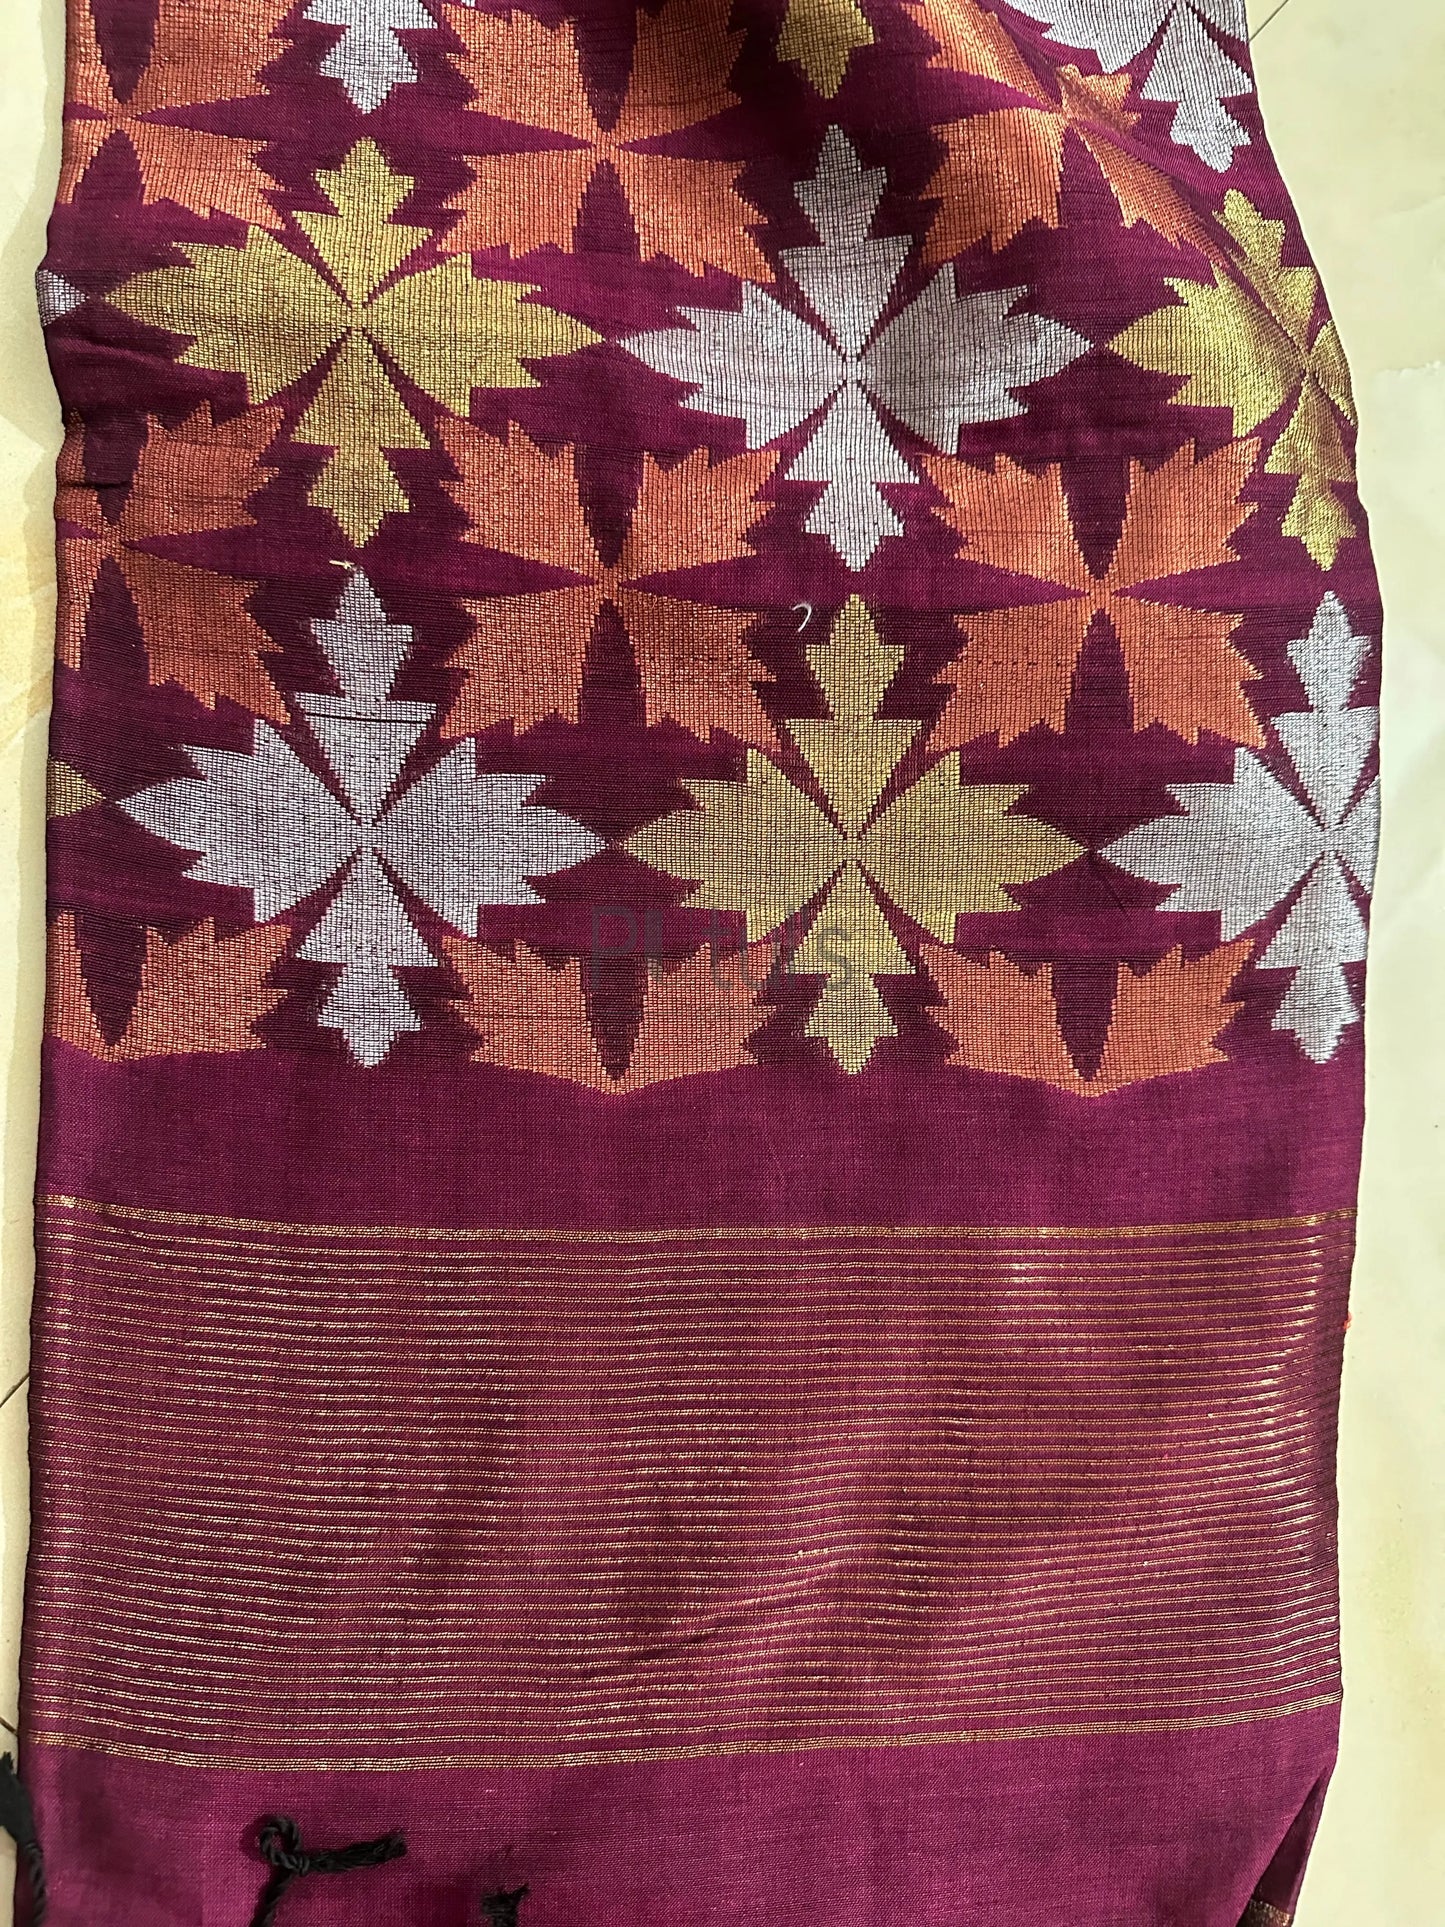 Copper silver and gola zari pallu on the mercerized cotton saree Putul's Fashion